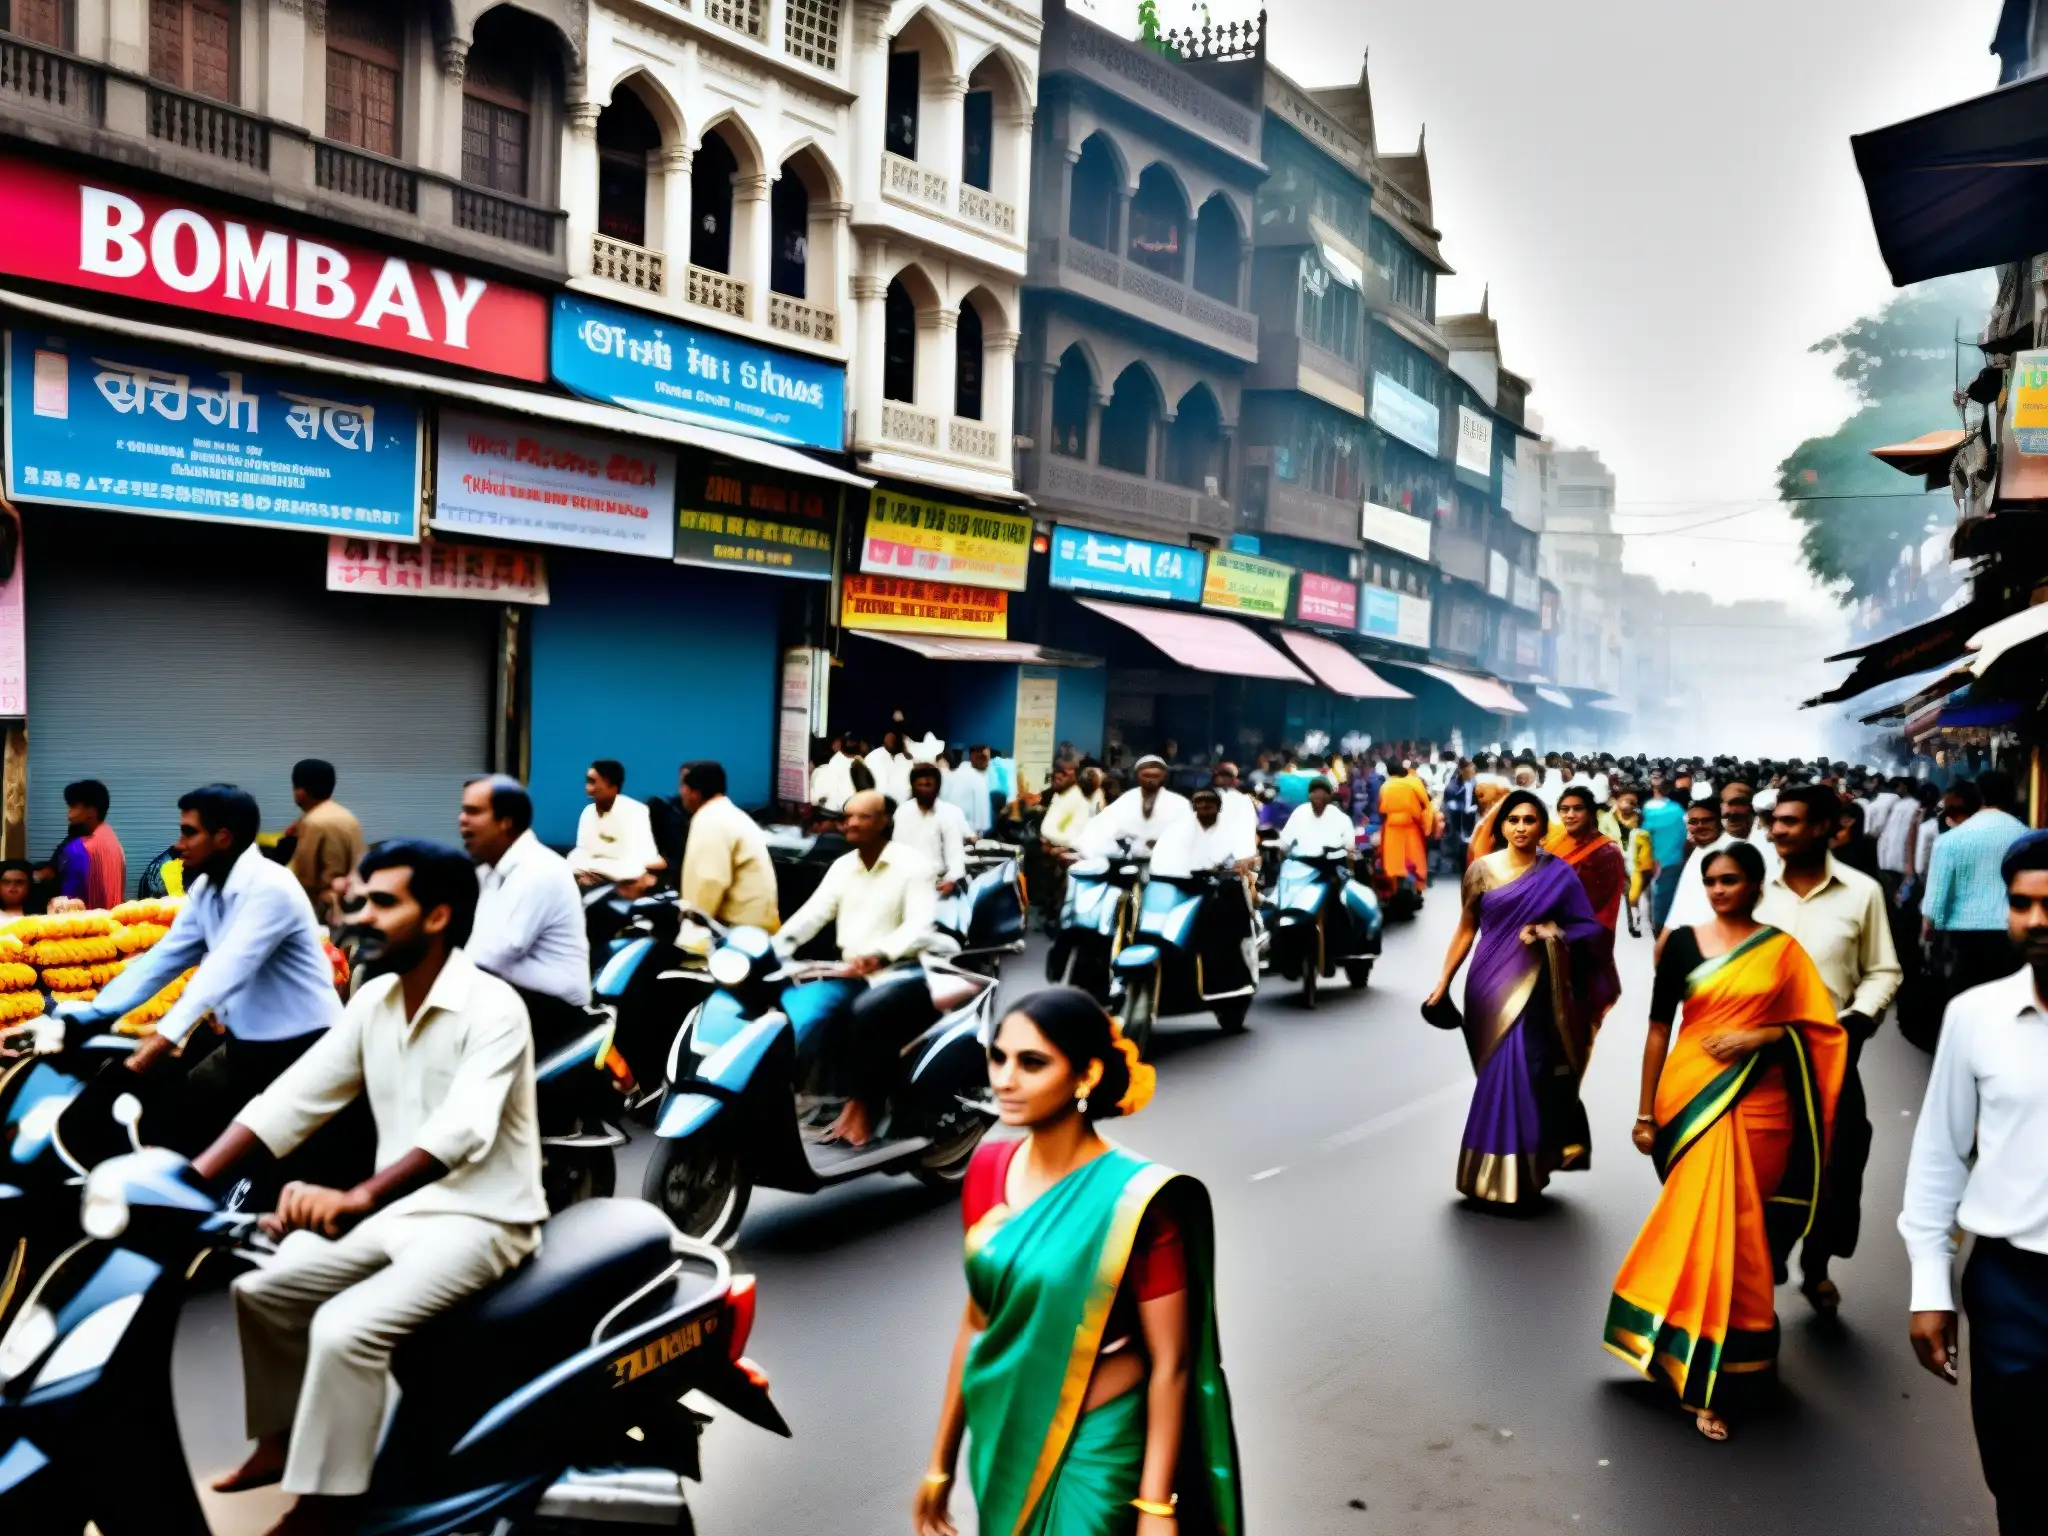 Una misteriosa actriz pasea por una bulliciosa calle de Bombay, encarnando el mito y el espectro de la ciudad